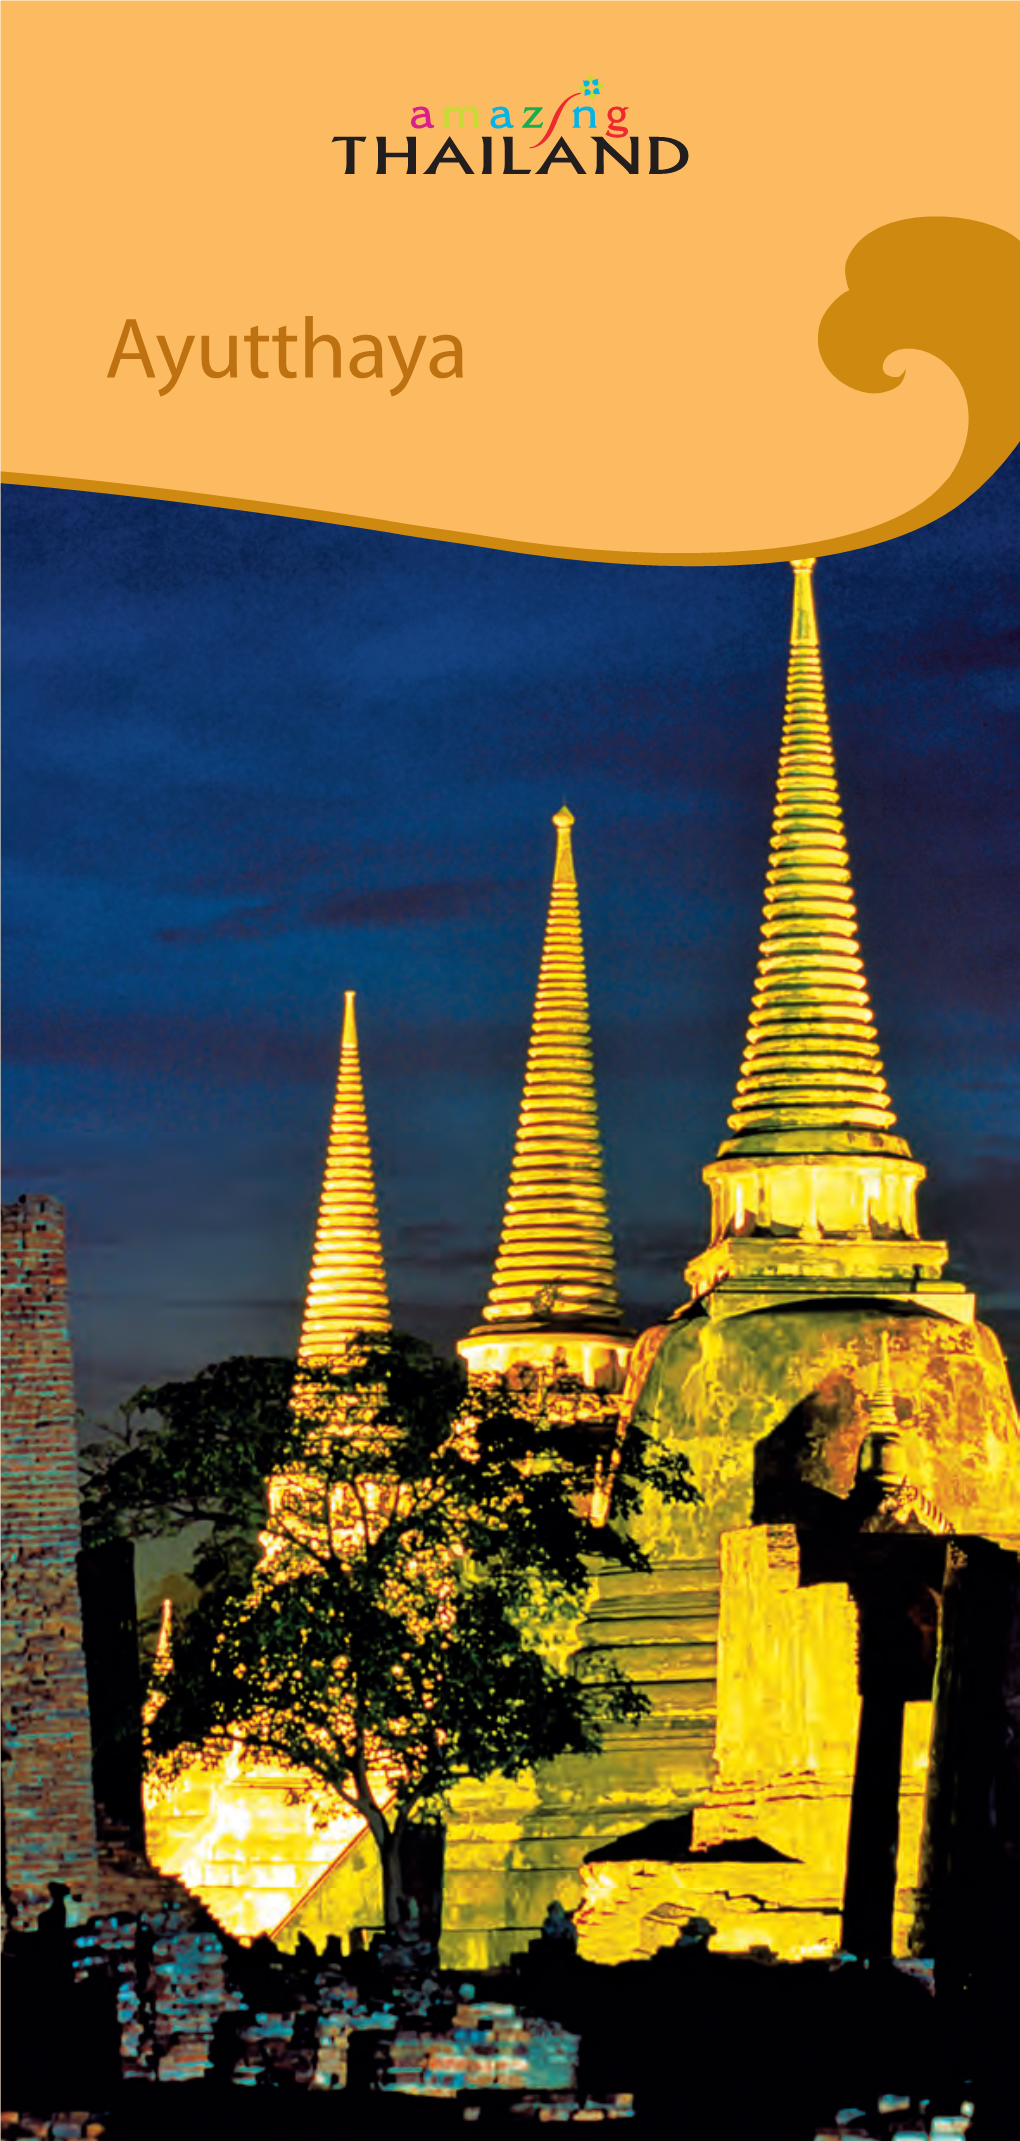 Ayutthaya Tourist Information Division (Tel